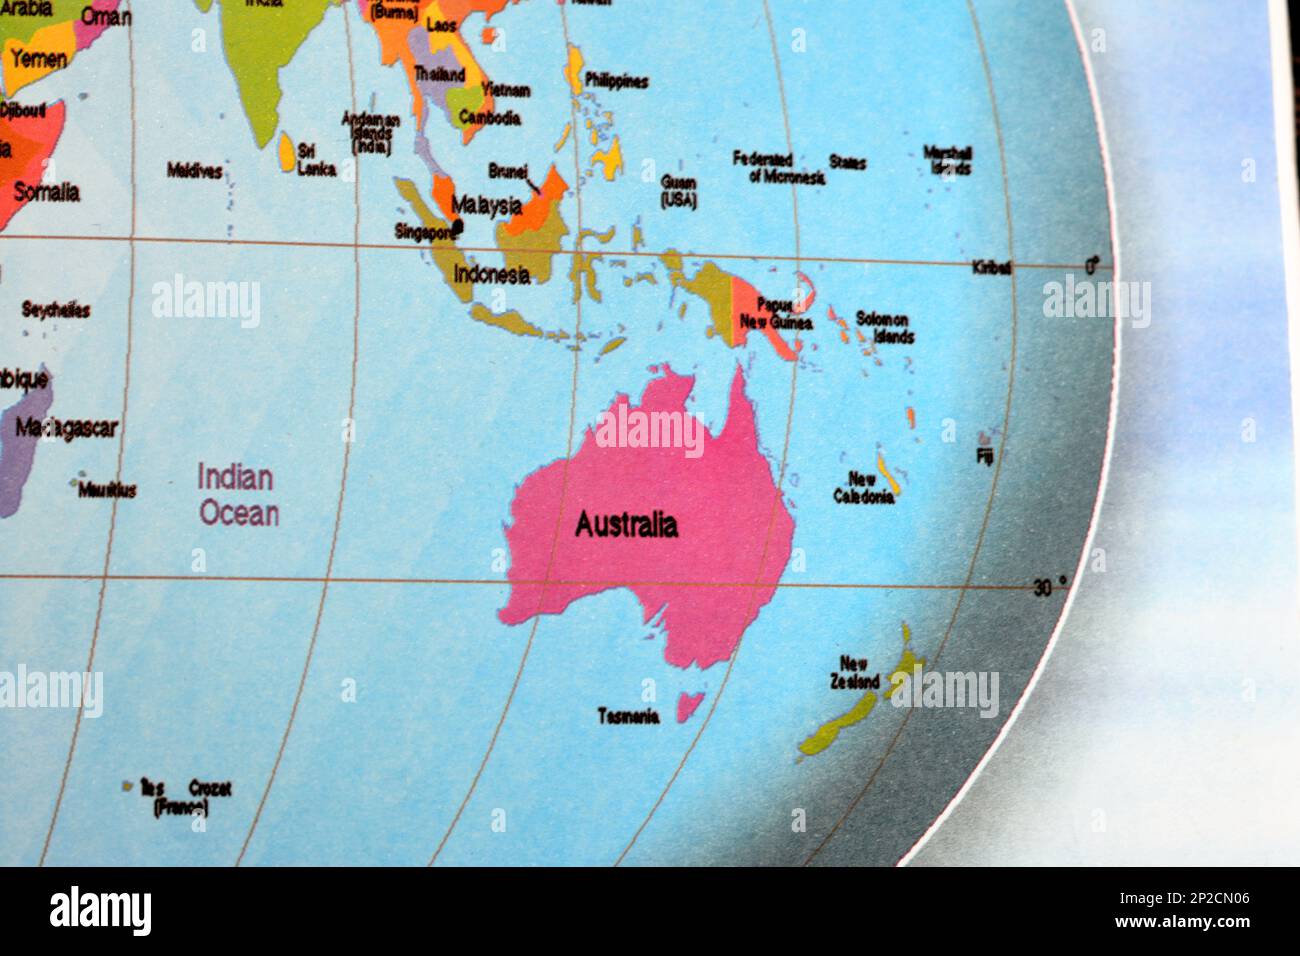 Continent australien entouré par l'océan Indien et la Nouvelle-Zélande, l'Indonésie, la Malaisie, Singapour et d'autres pays de la carte mondiale de la Terre, Trav Banque D'Images